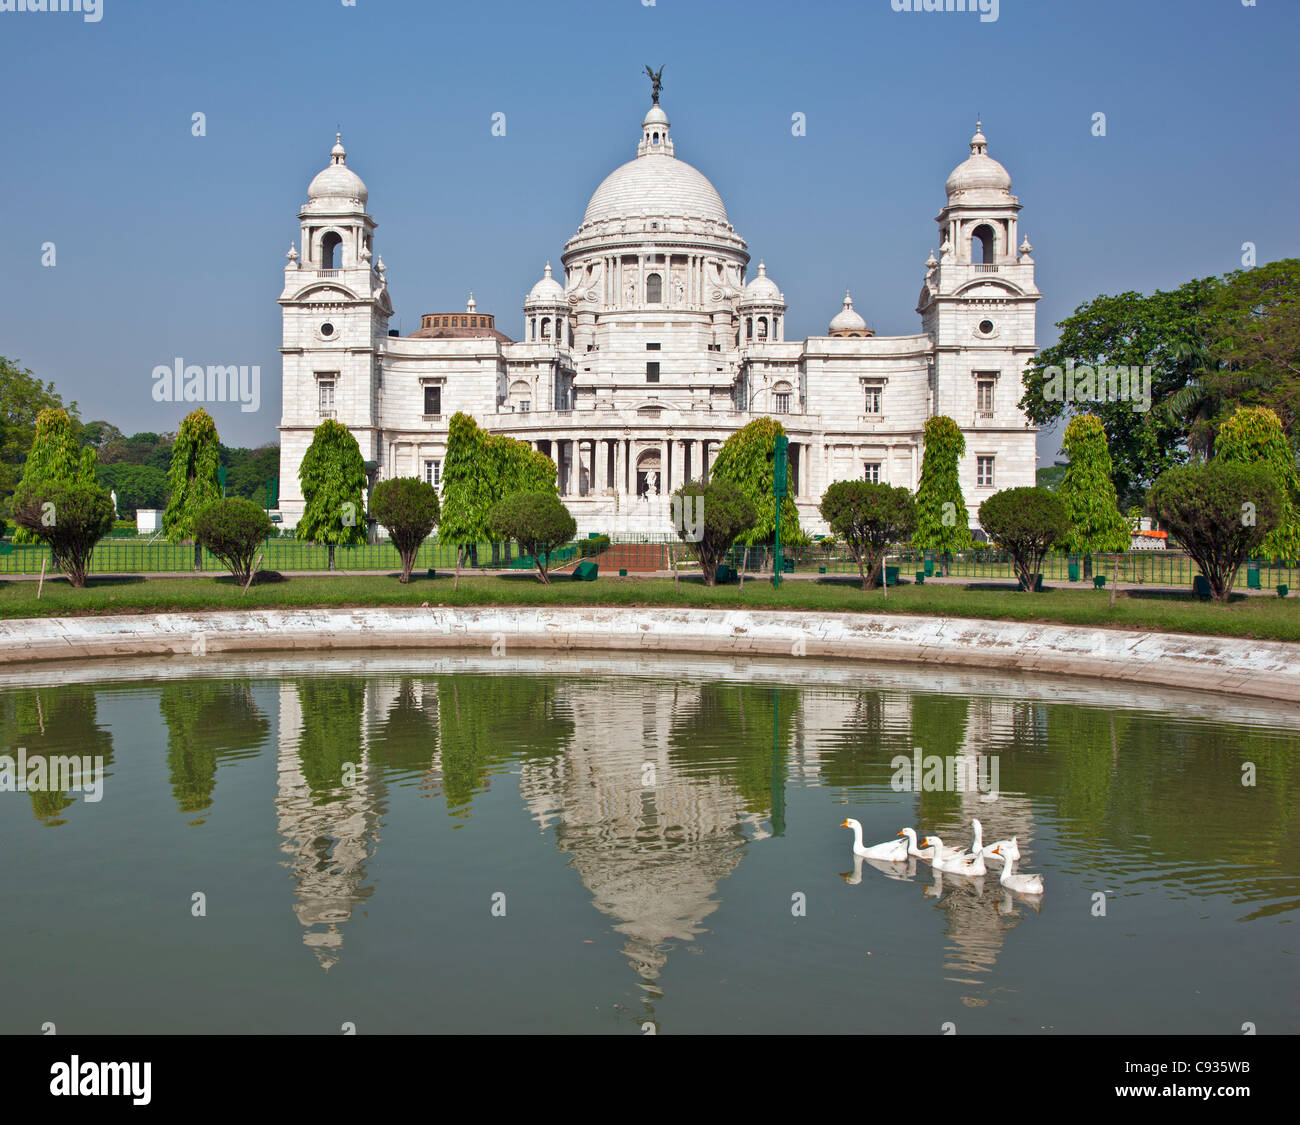 Befindet sich in einem gepflegten Park, den herrlichen Victoria Memorial Gebäude mit seinen weißen Marmorkuppeln. Stockfoto